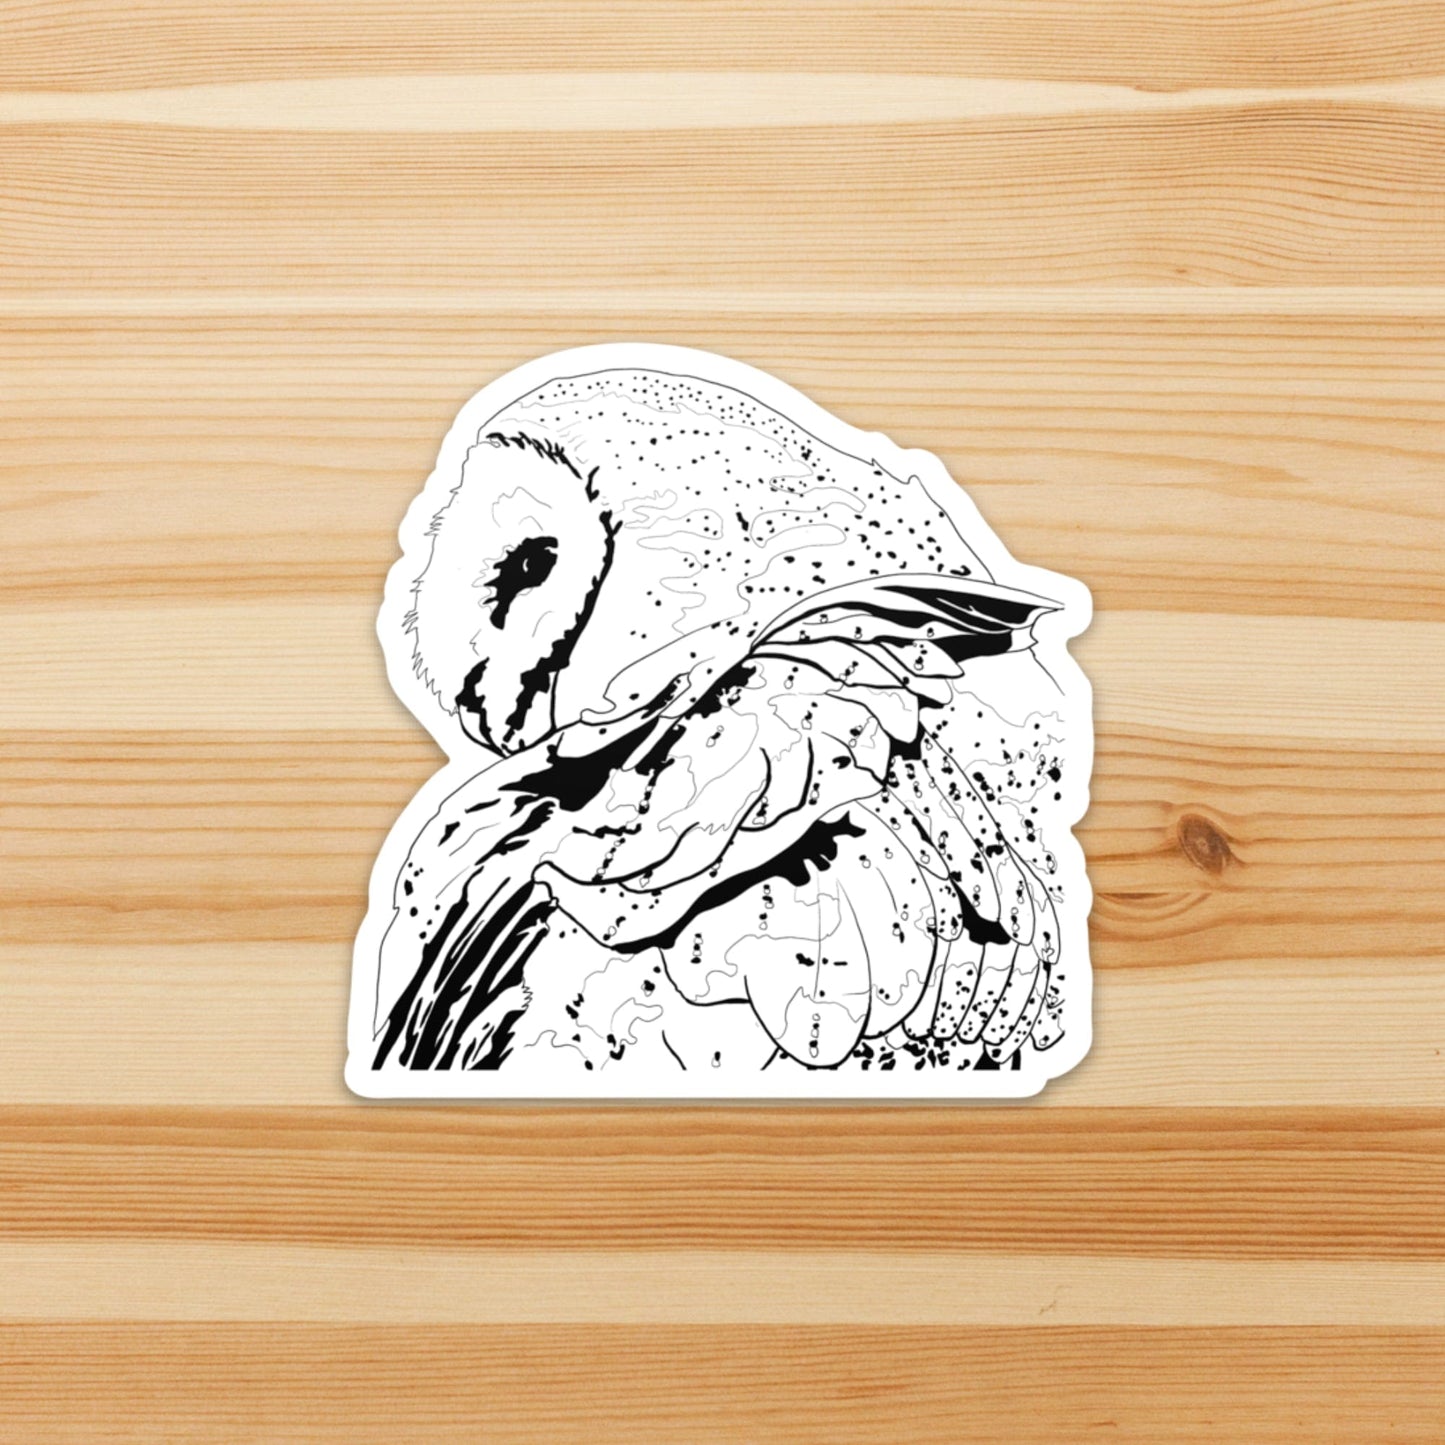 PinkPolish Design Stickers "Constellation Owl" Die Cut Vinyl Sticker